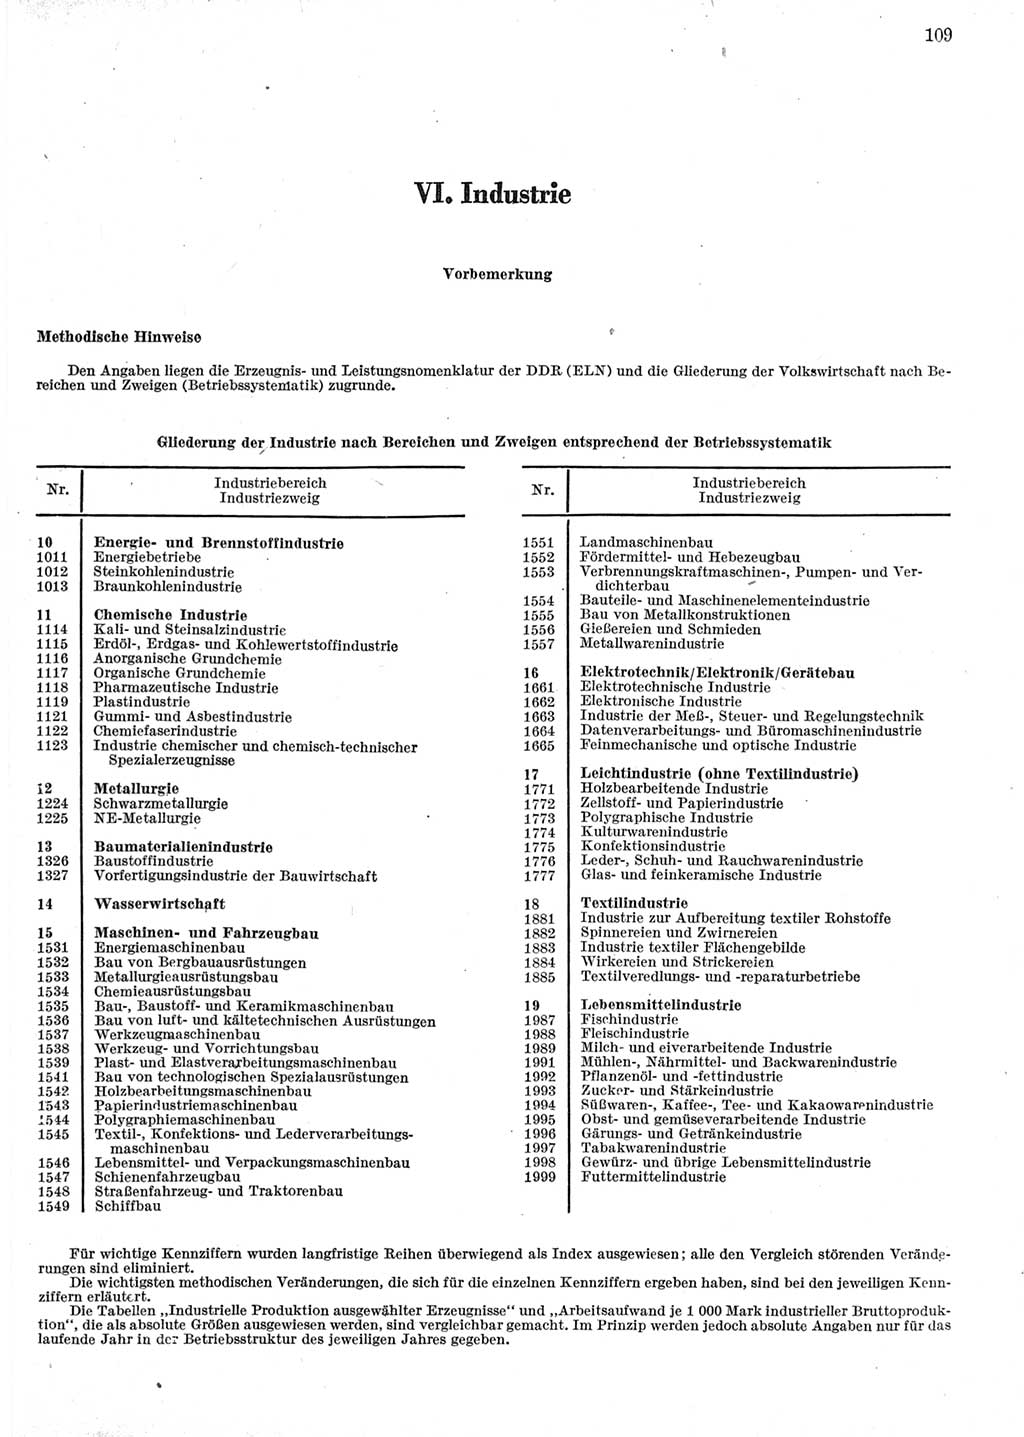 Statistisches Jahrbuch der Deutschen Demokratischen Republik (DDR) 1973, Seite 109 (Stat. Jb. DDR 1973, S. 109)